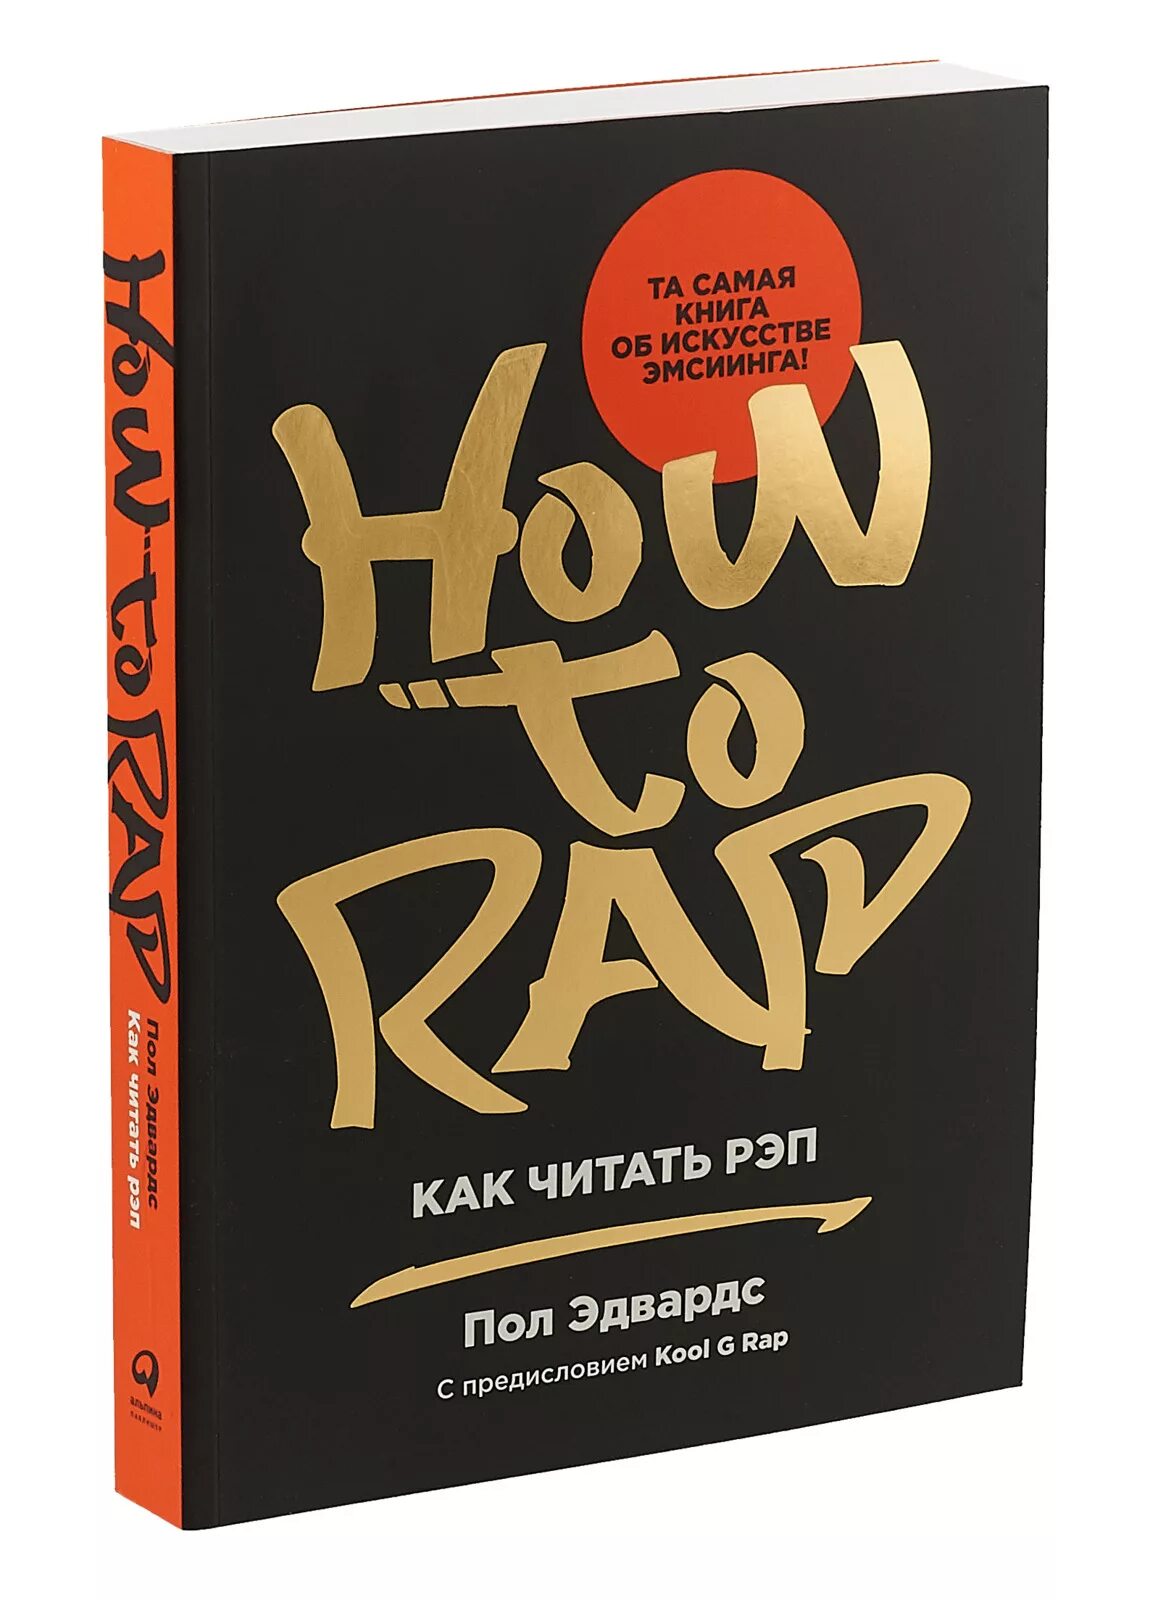 Рэп чтение. Книги про рэп. How to Rap книга. Как читать рэп. Пол Эдвардс. Как читать рэп.